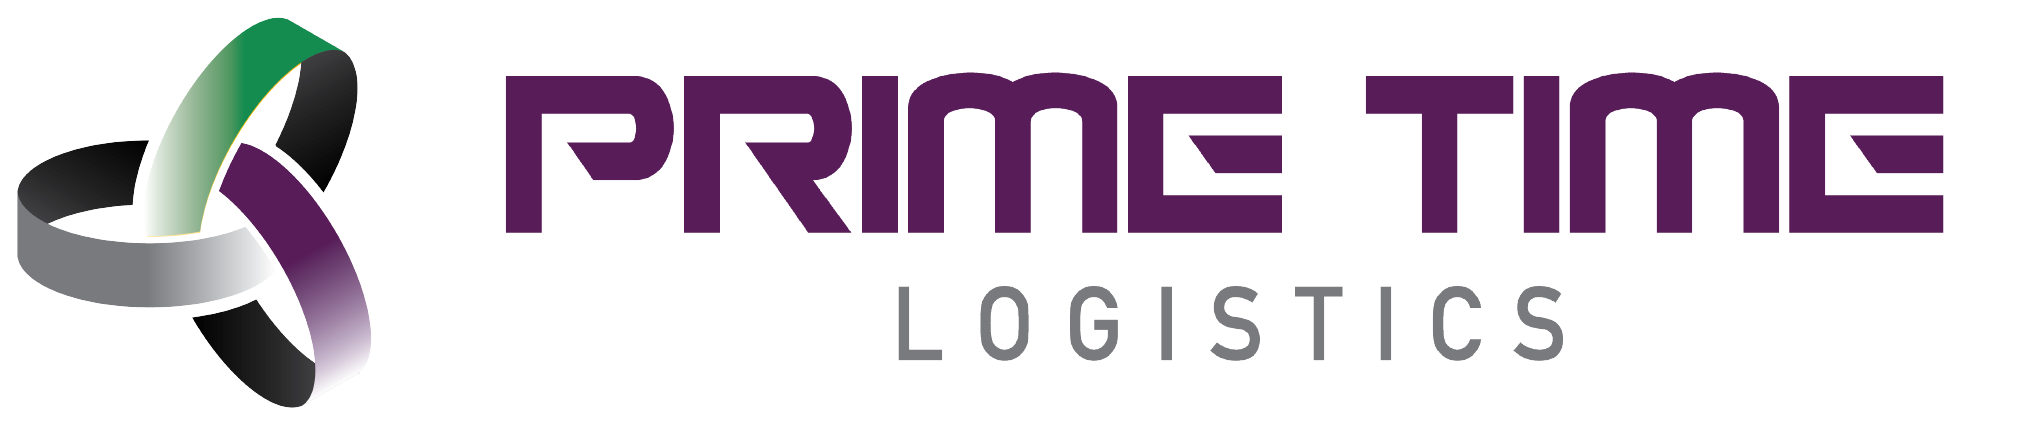 Prime Time Logistics LLC